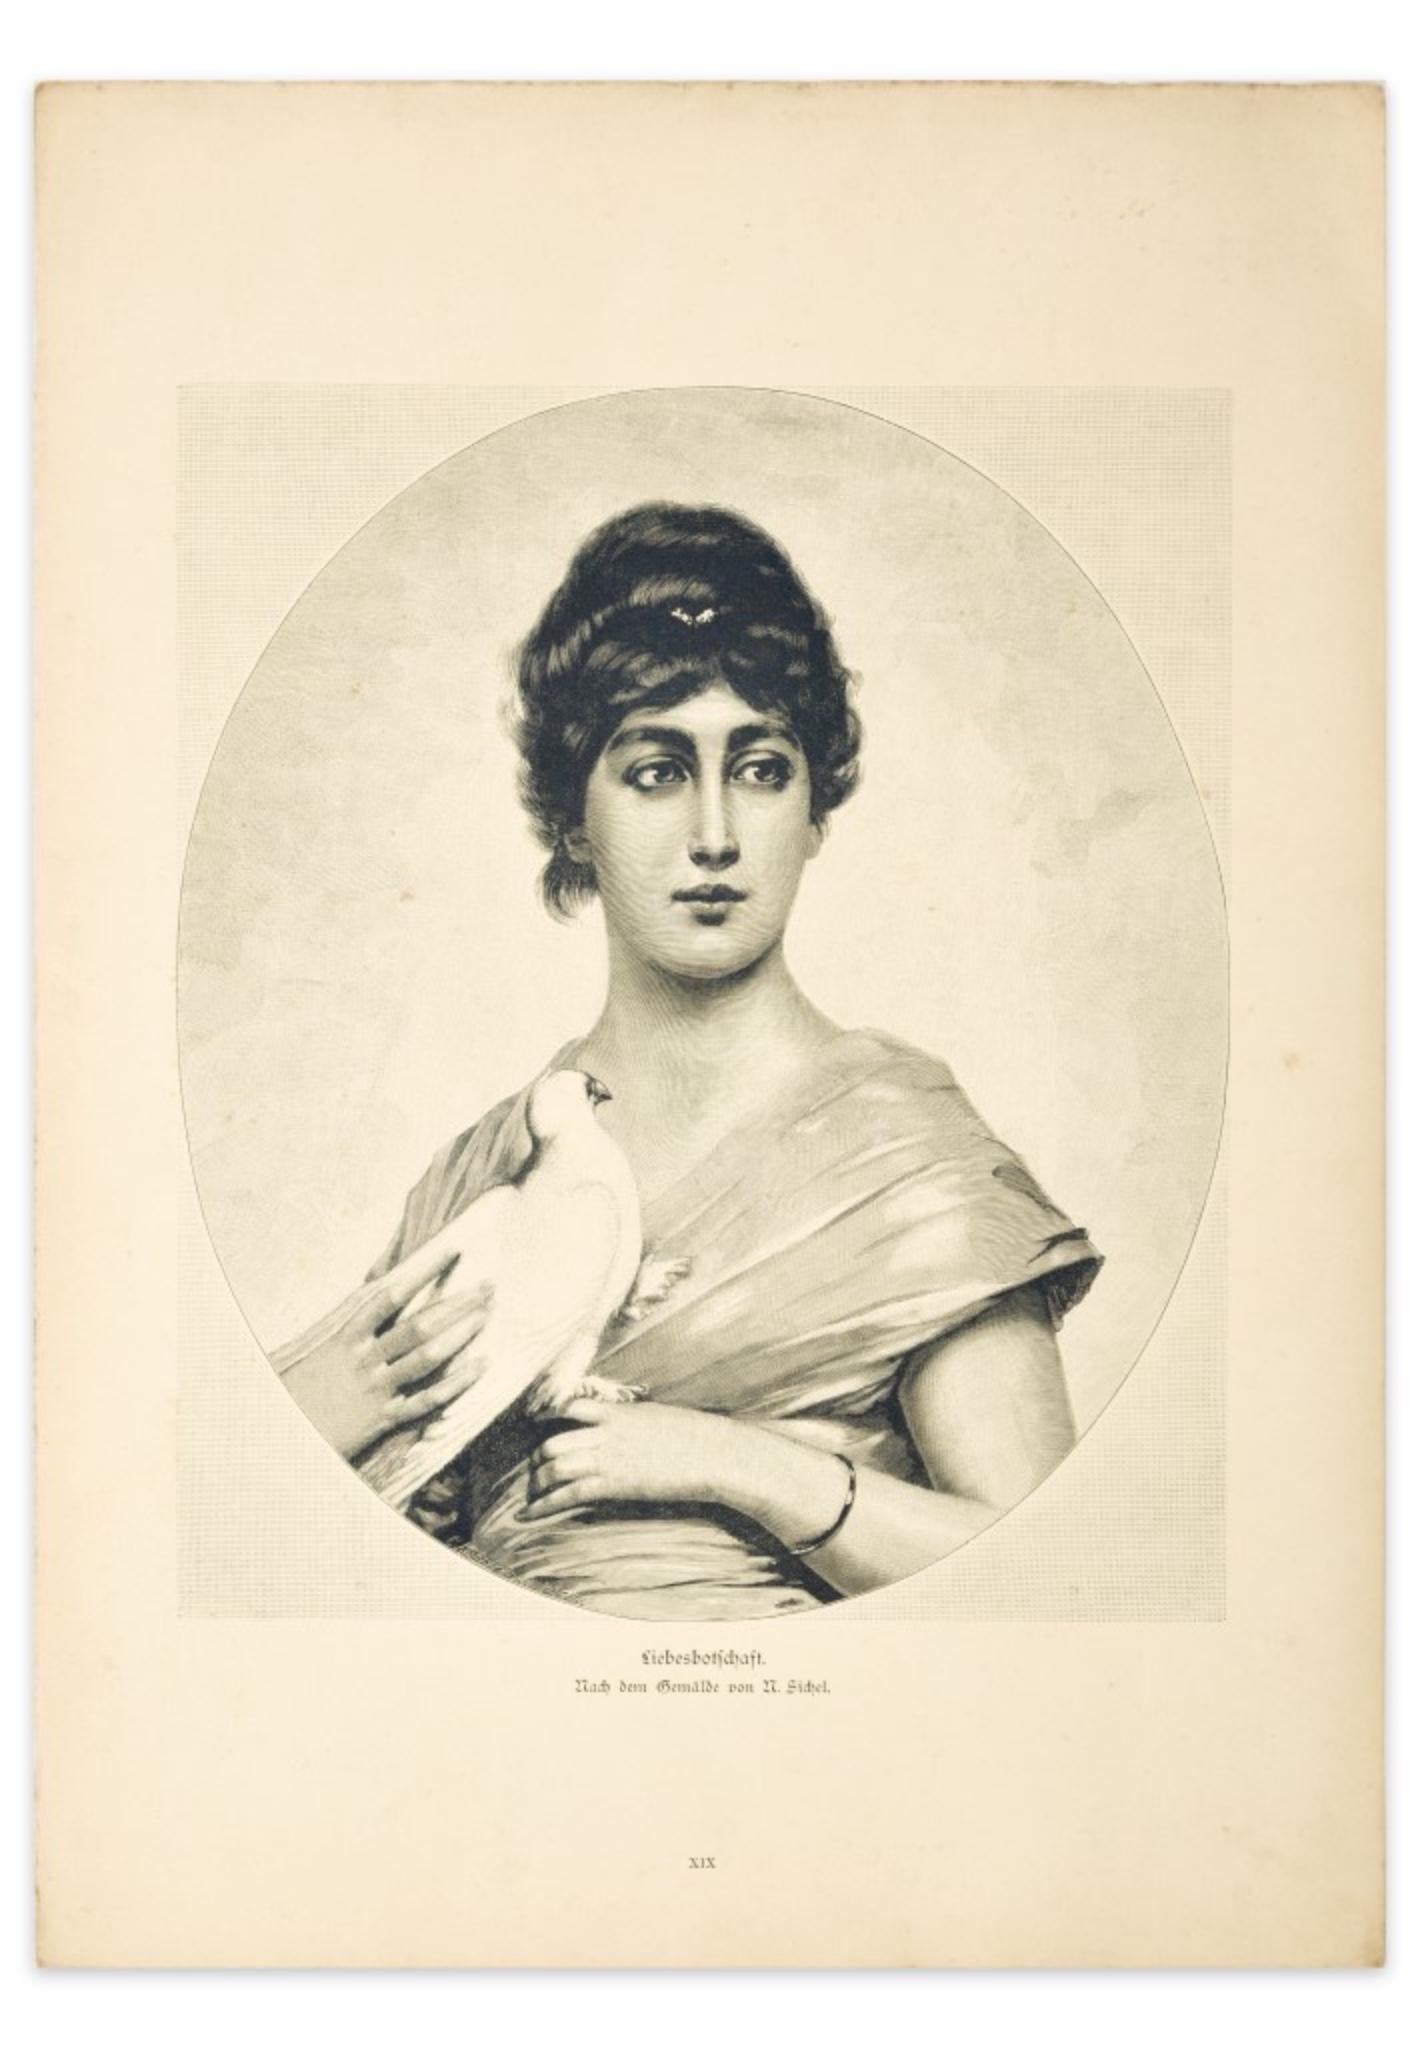 D'Apres M. Sichel Portrait Print - Woman with Dove - Original Zincography after M. Sichel - 1905